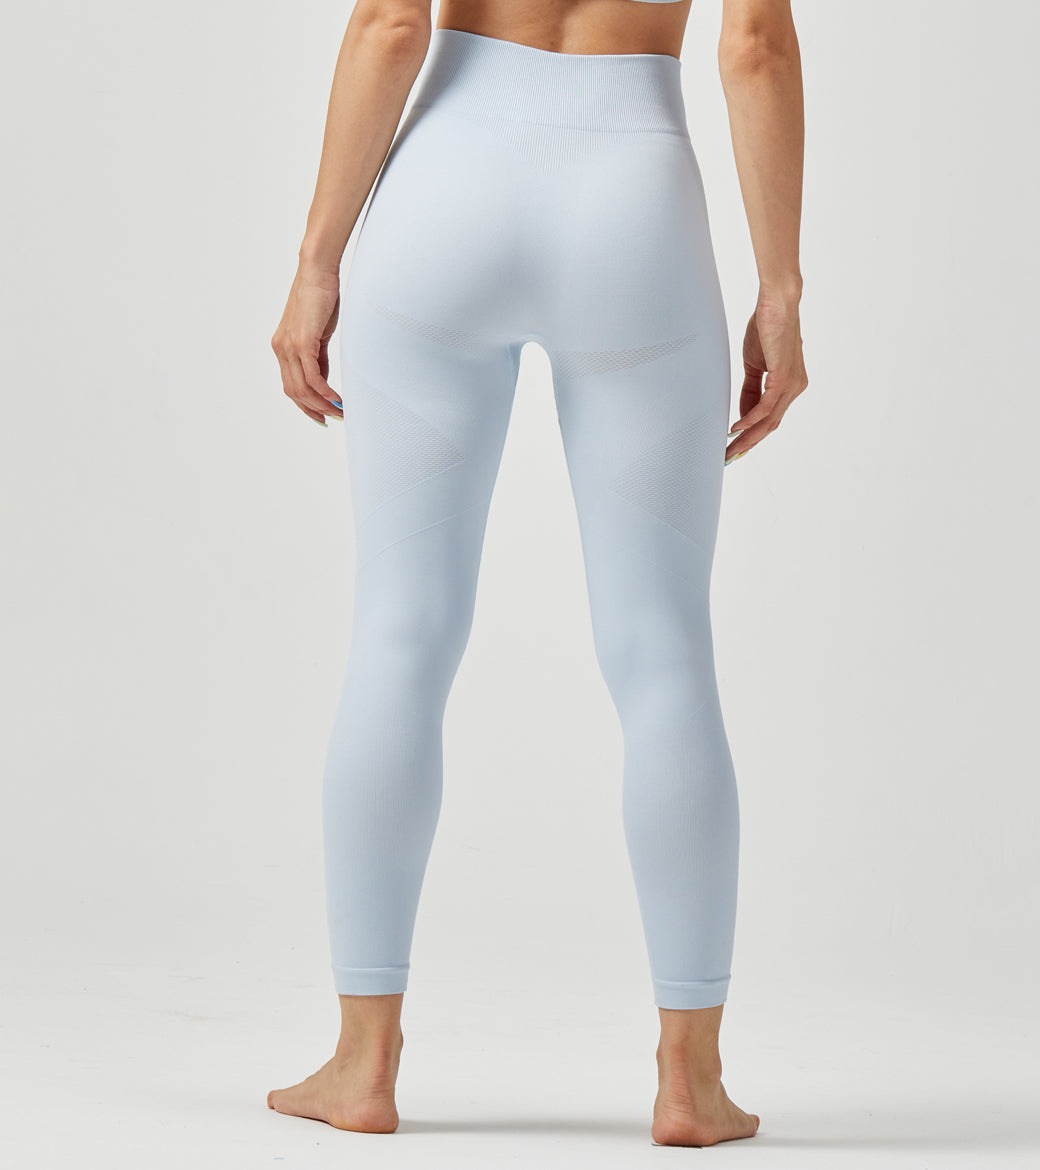 LOVESOFT Light Blue Seamless Leggings for Women Yoga Workout Tight Pants